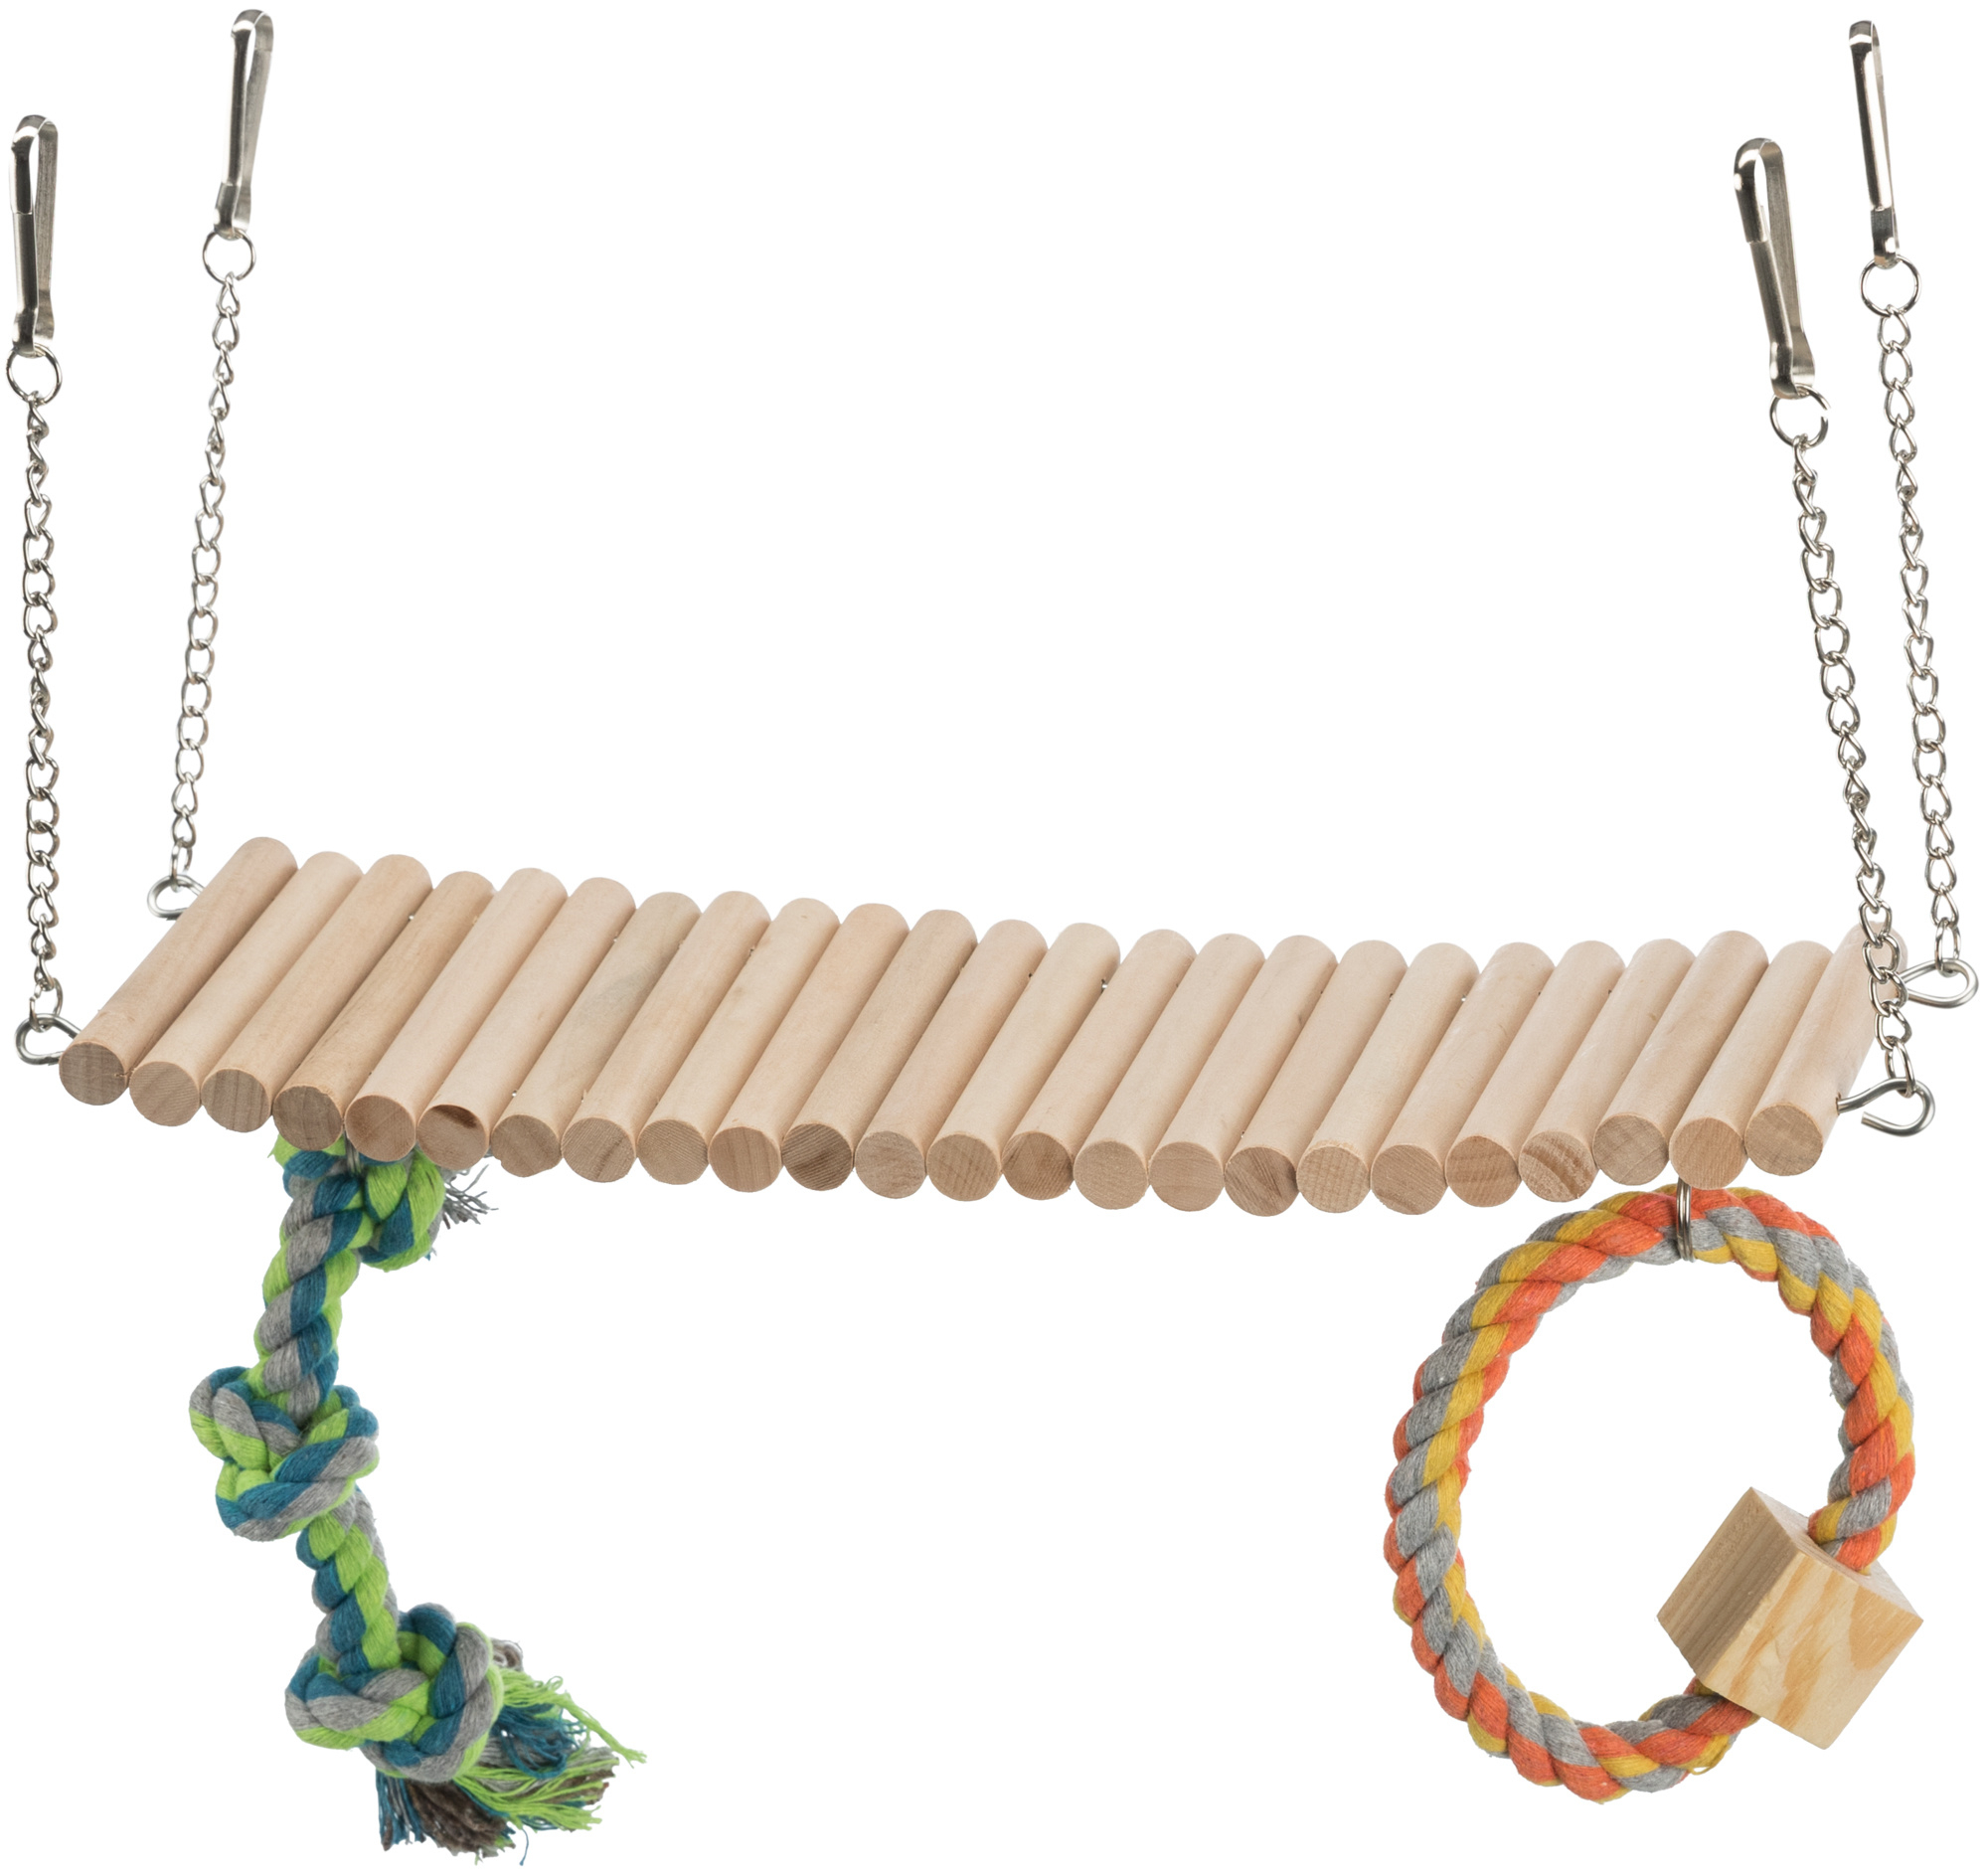 Ponte suspensa em madeira com corda e brinquedo para roedores